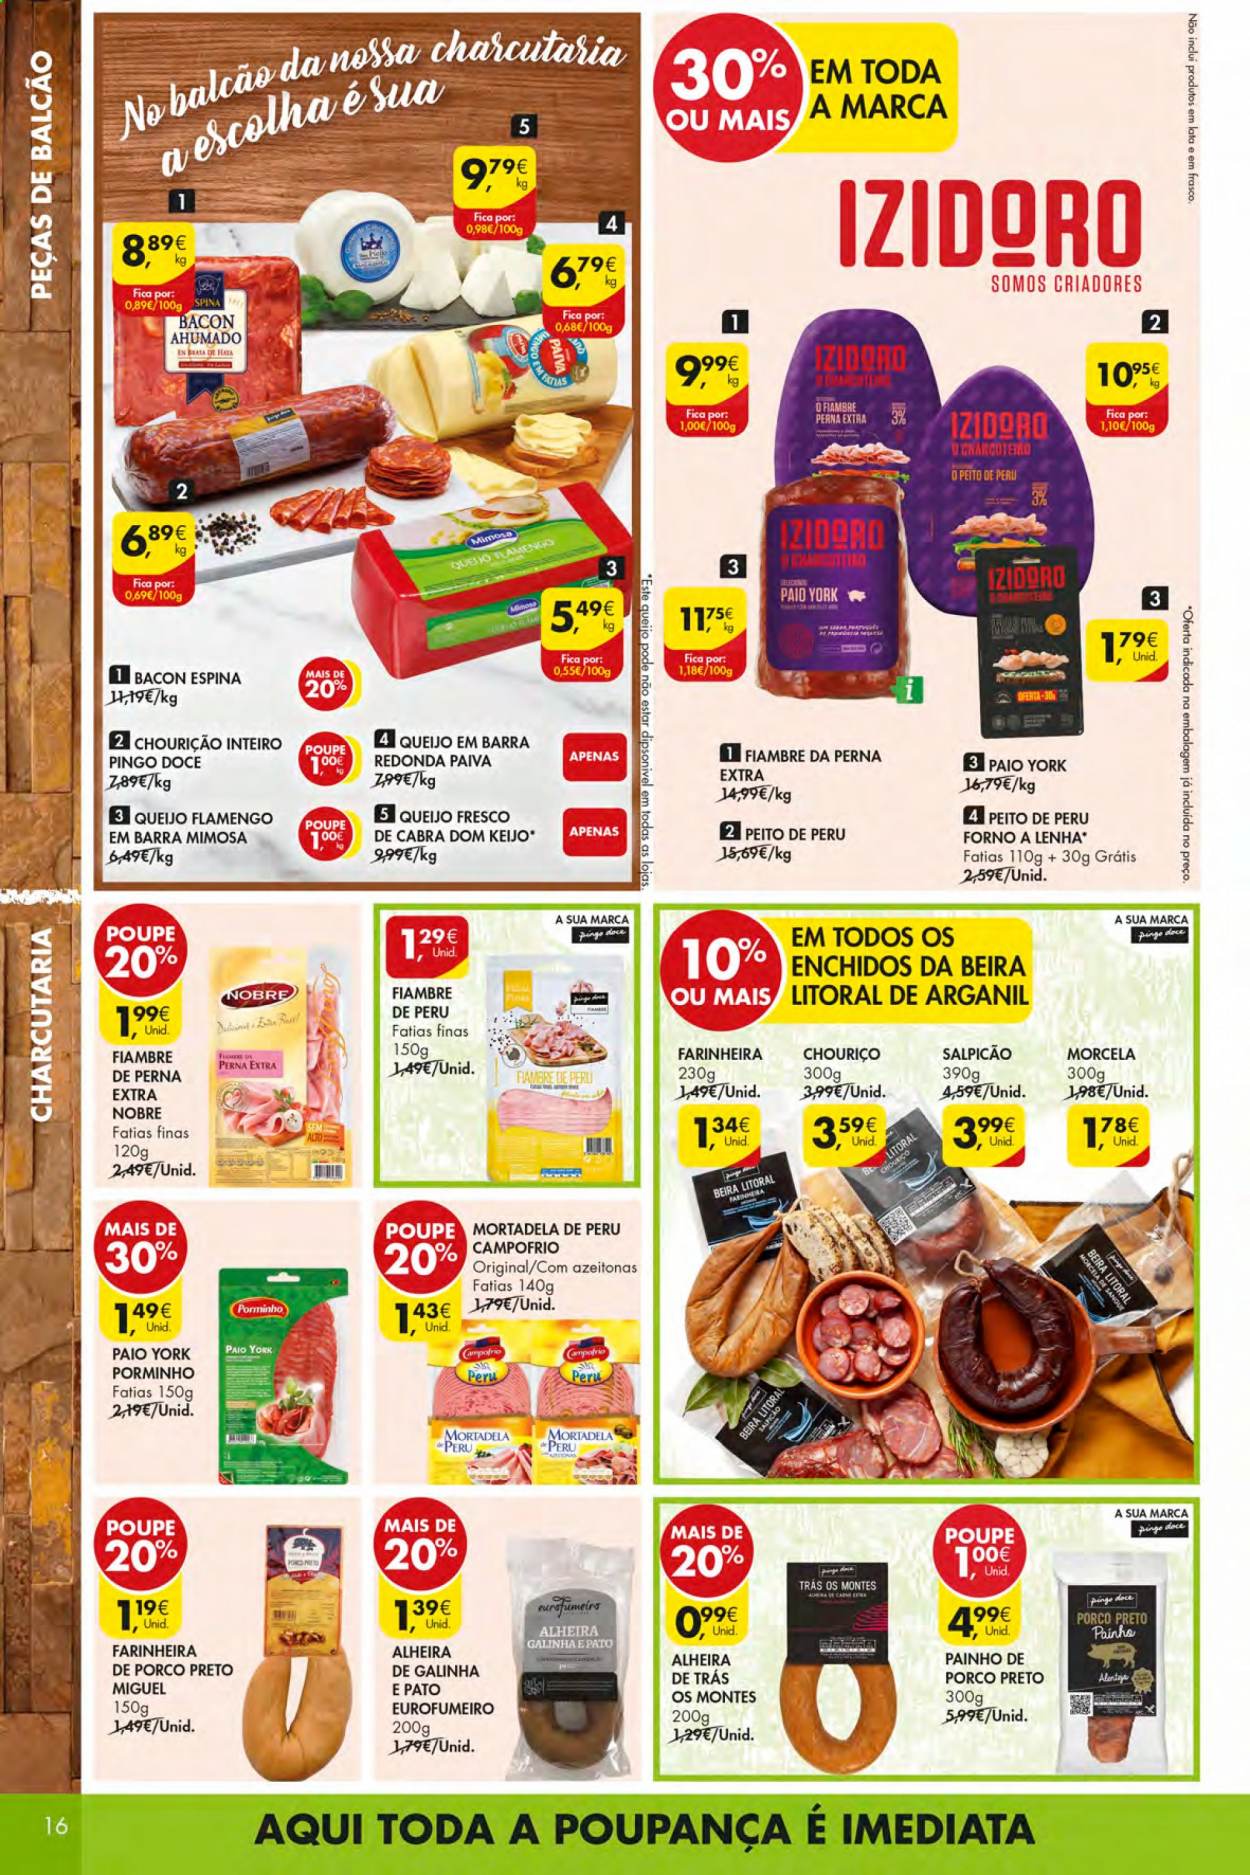 thumbnail - Folheto Pingo Doce - 6.4.2021 - 12.4.2021 - Produtos em promoção - peito de peru, perú, mortadela, bacon, queijo, Mimosa. Página 16.